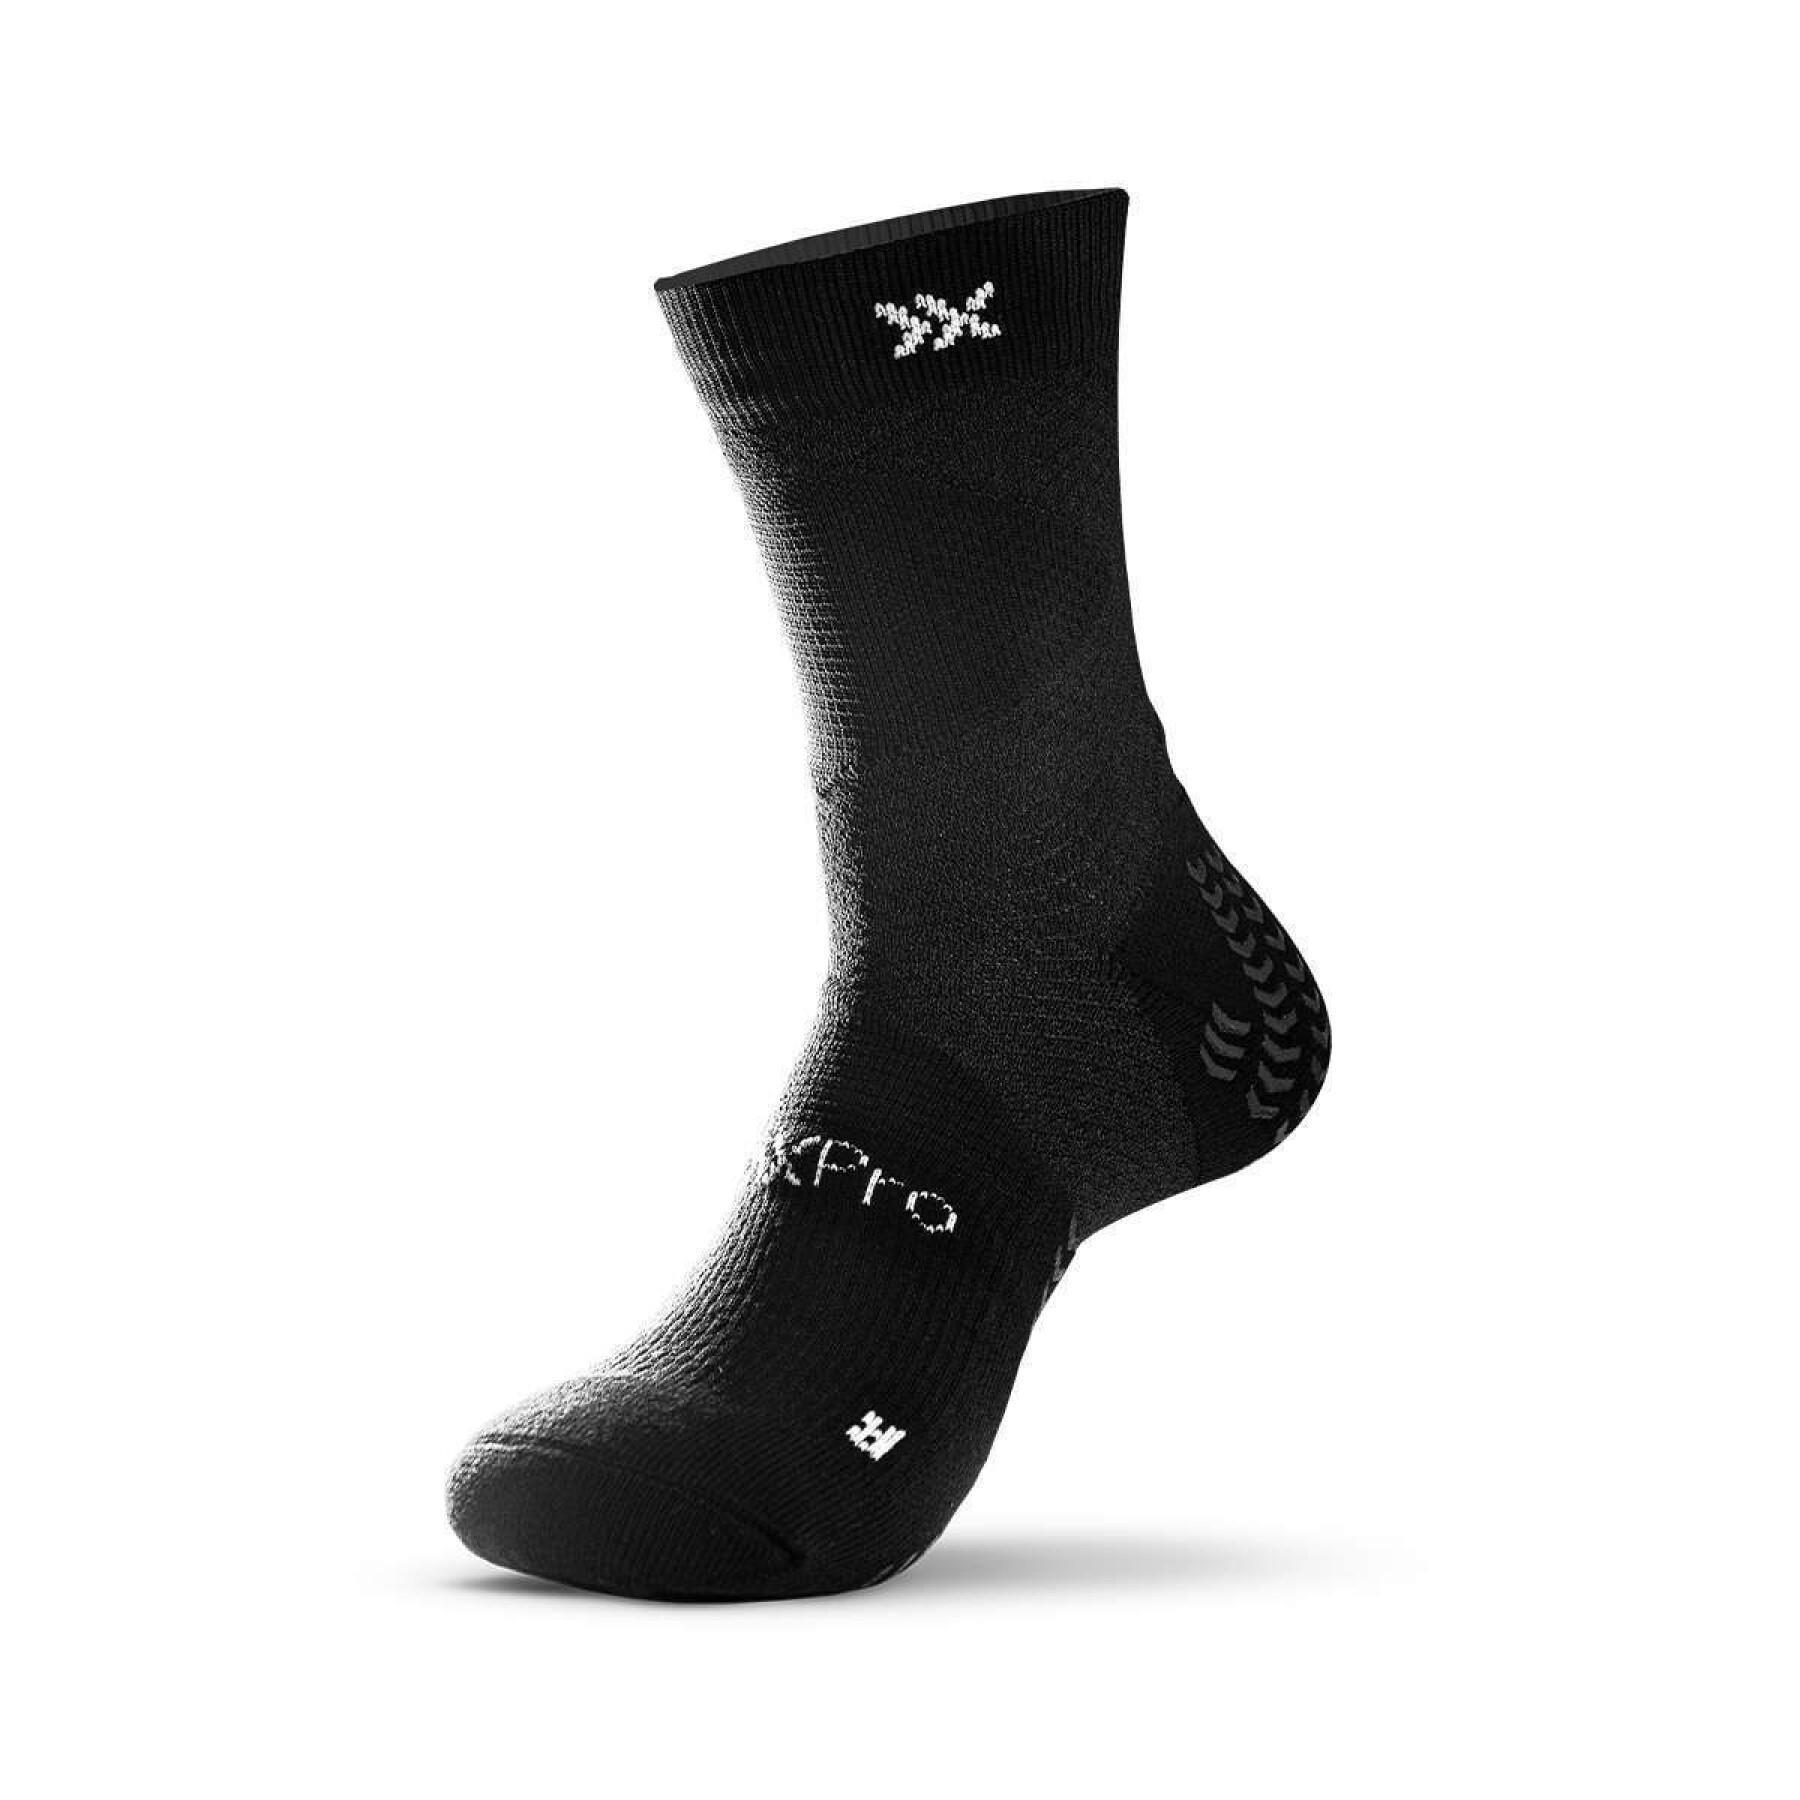 Par de calcetines Gearxpro Soxpro Ankle Support